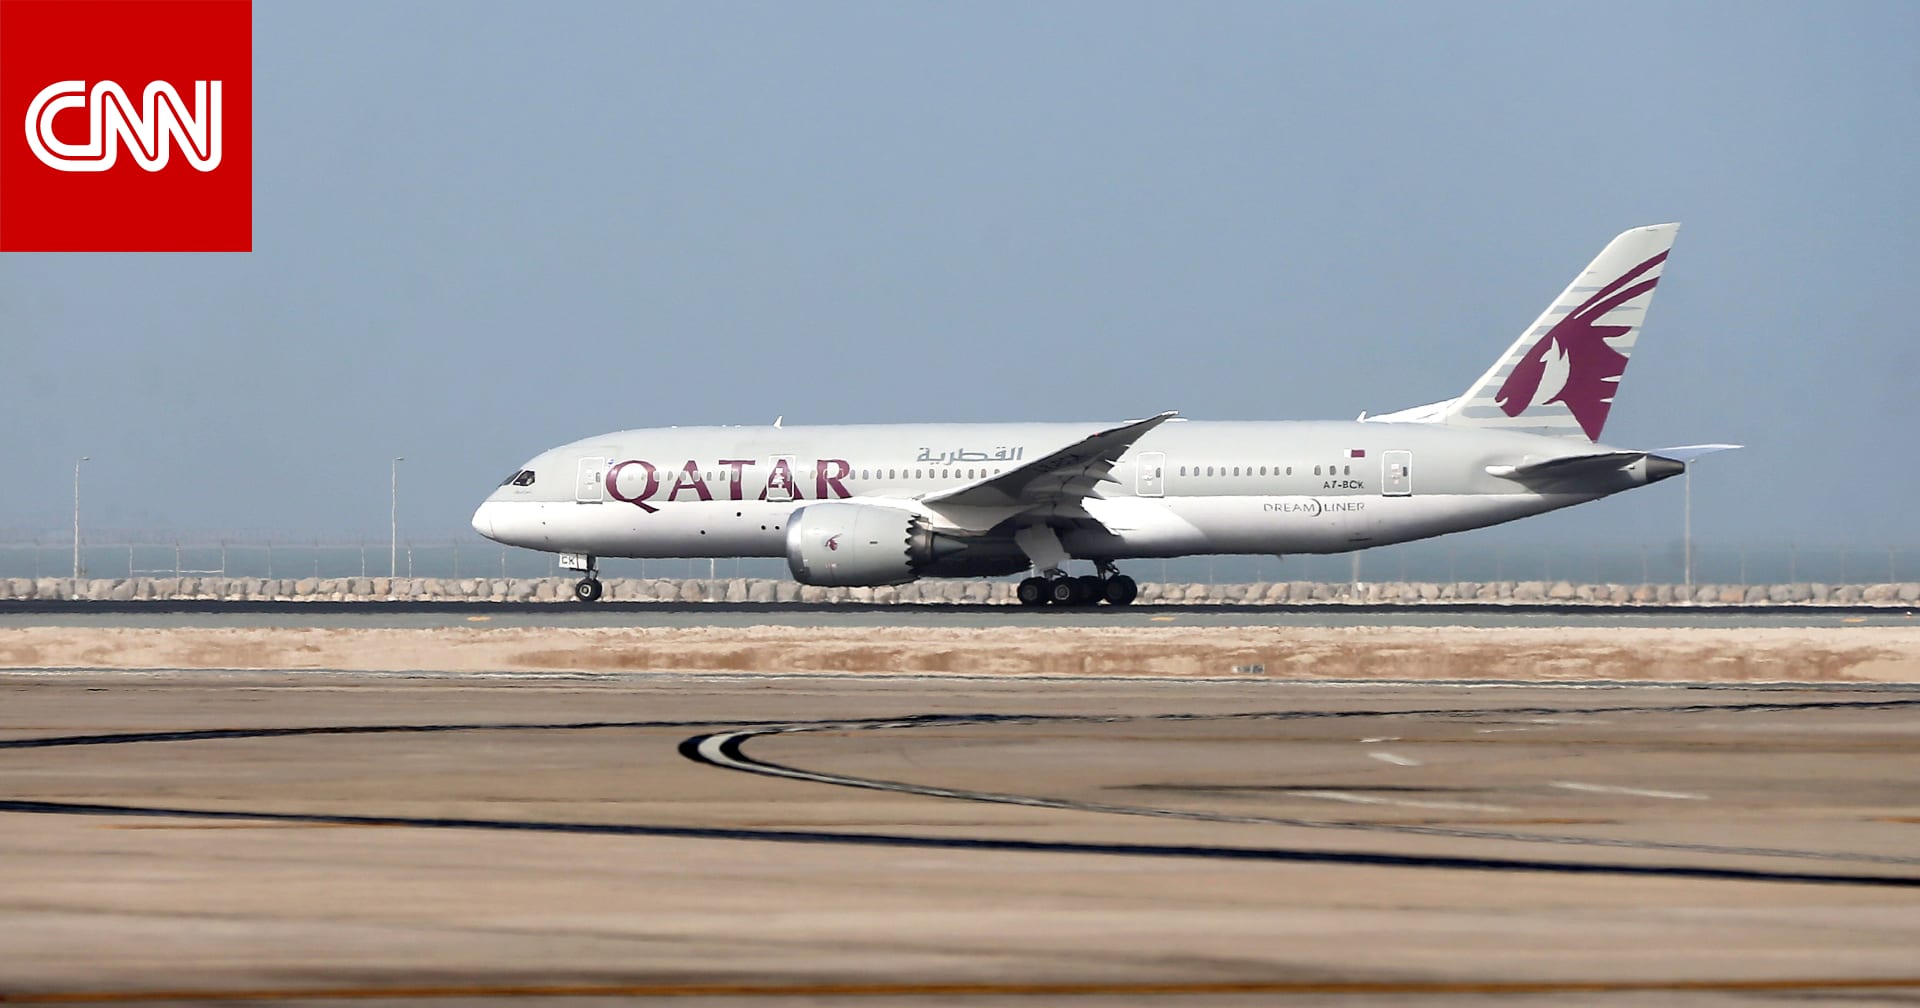 تفاعل واسع على  تويتر  مع صورة لوصول طائرة أميرية قطرية إلى السعودية - CNN Arabic